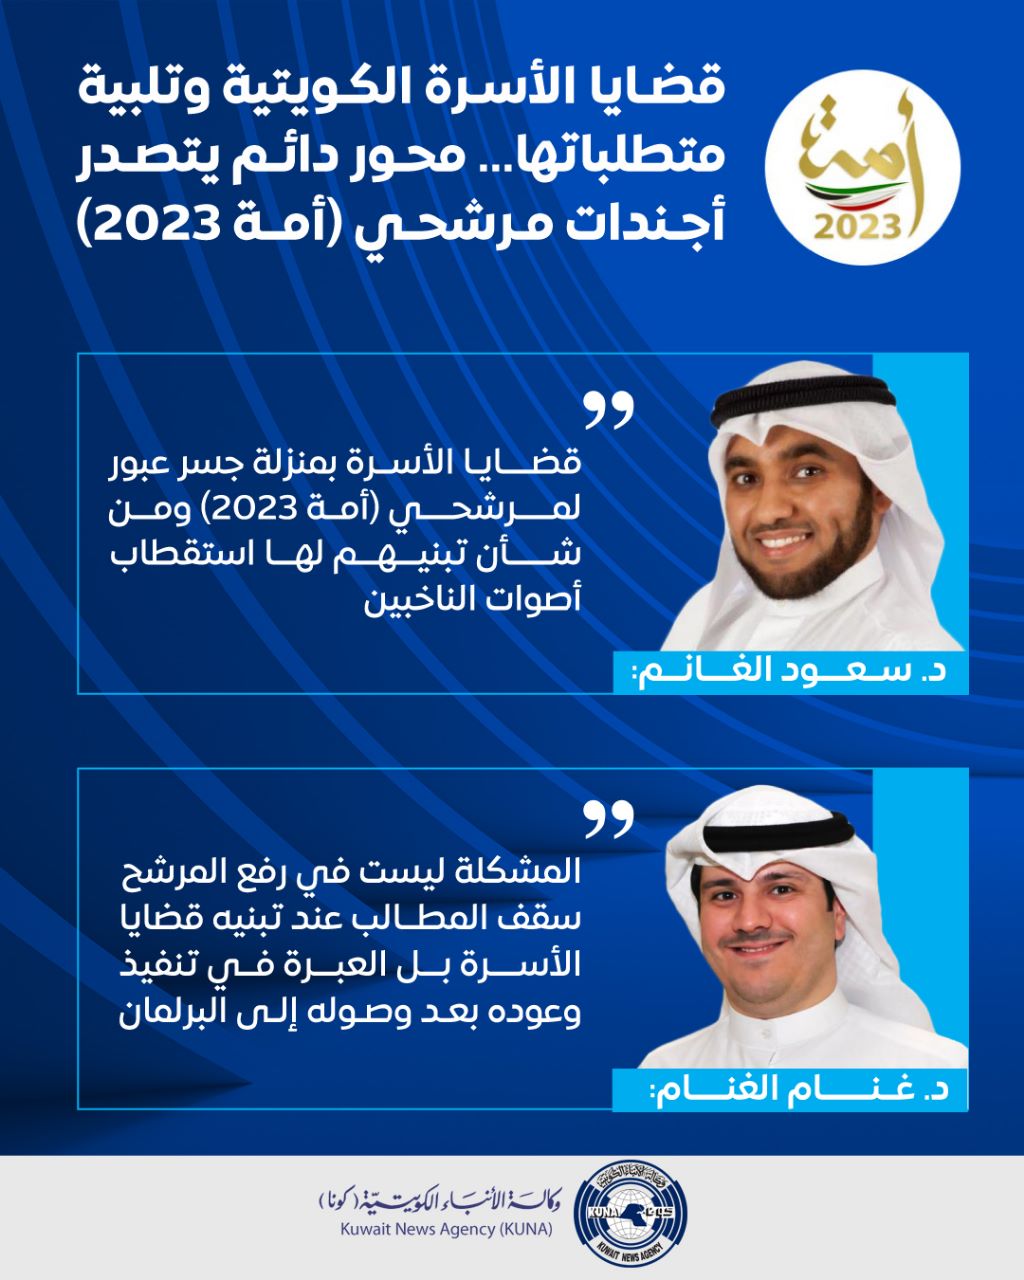 قضايا الأسرة الكويتية وتلبية متطلباتها... محور دائم يتصدر أجندات مرشحي (أمة 2023)